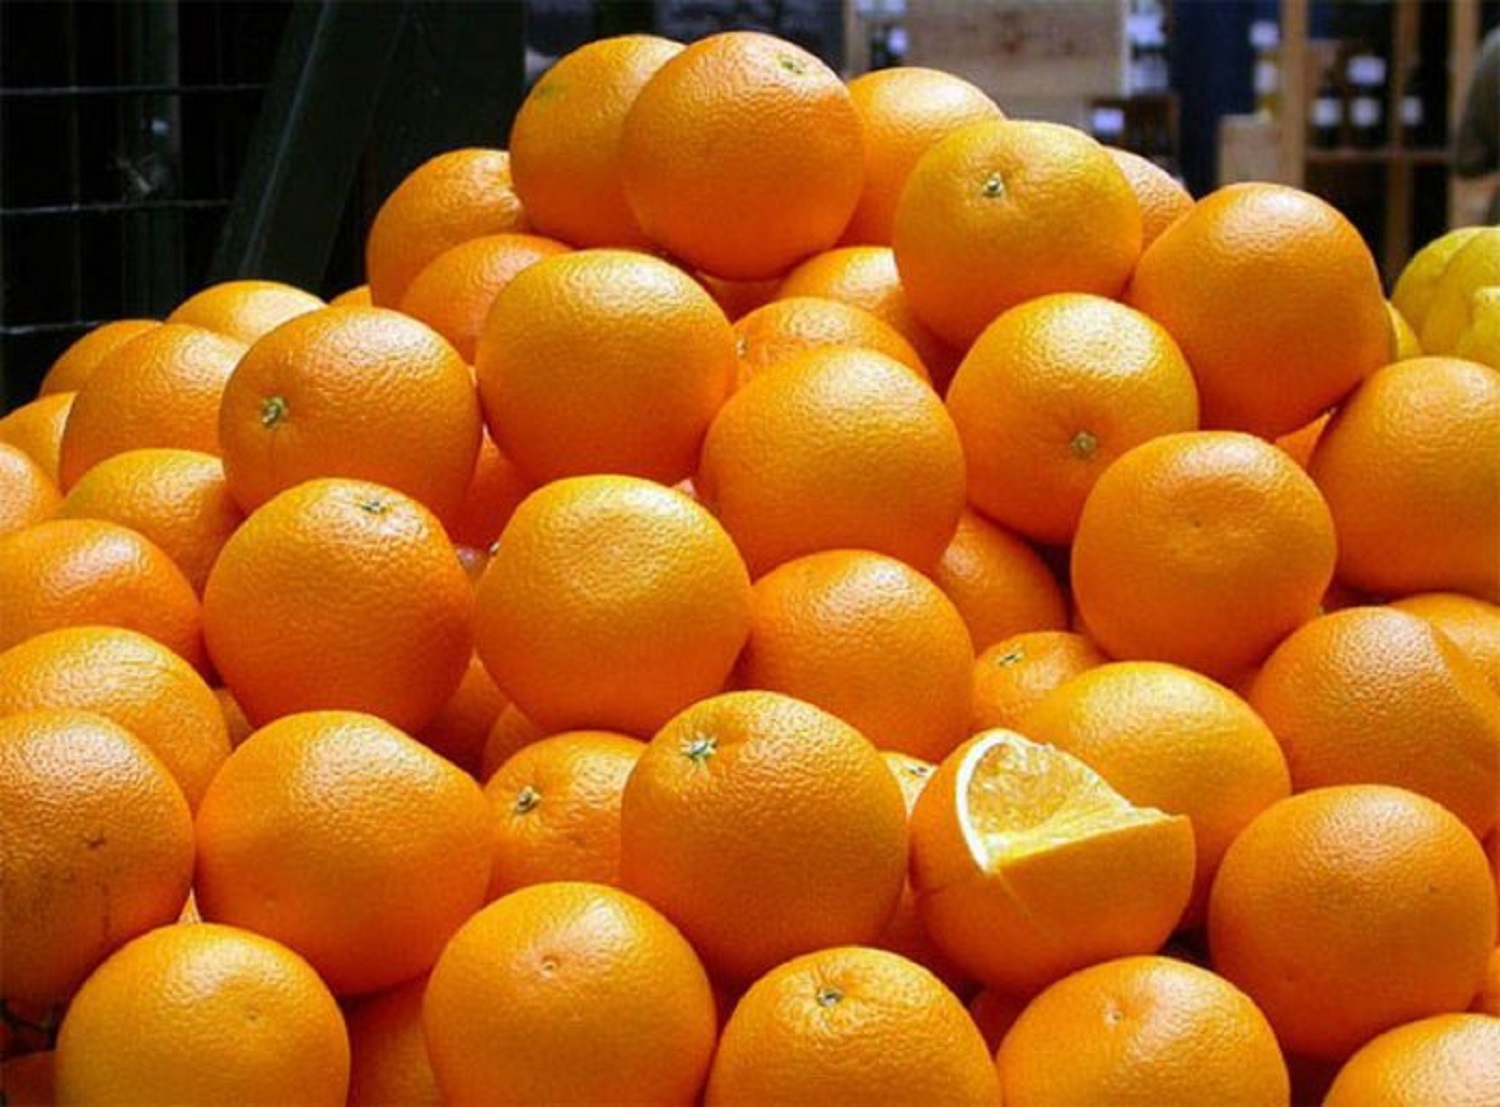 caída de producción de naranja